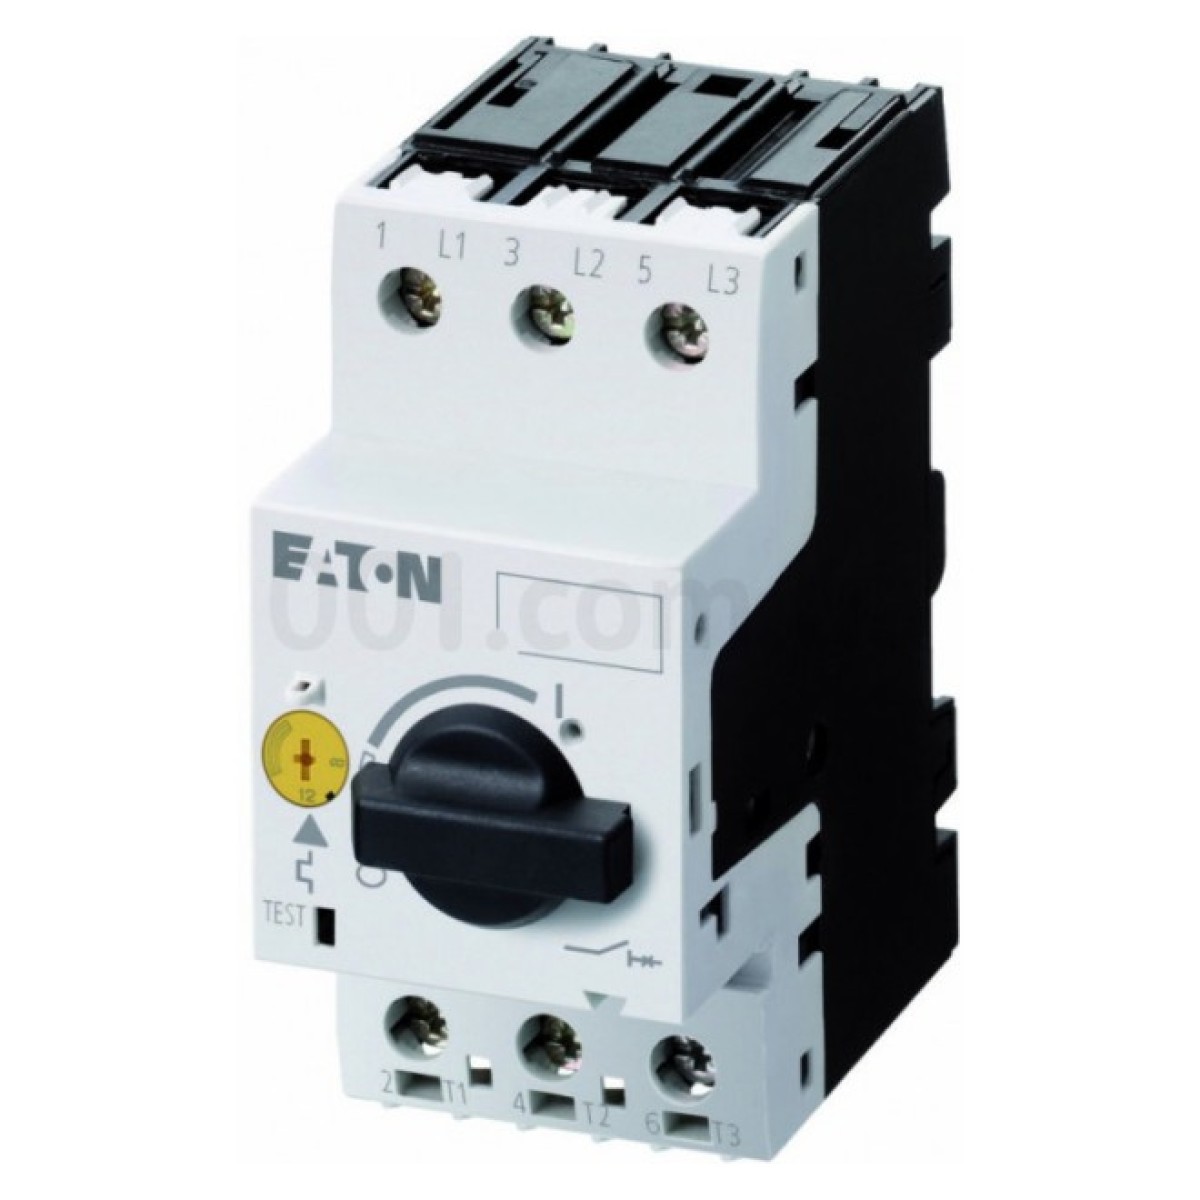 Автоматический выключатель защиты двигателя PKZM0-12 Ir=8...12А, Eaton (Moeller) 256_256.jpg